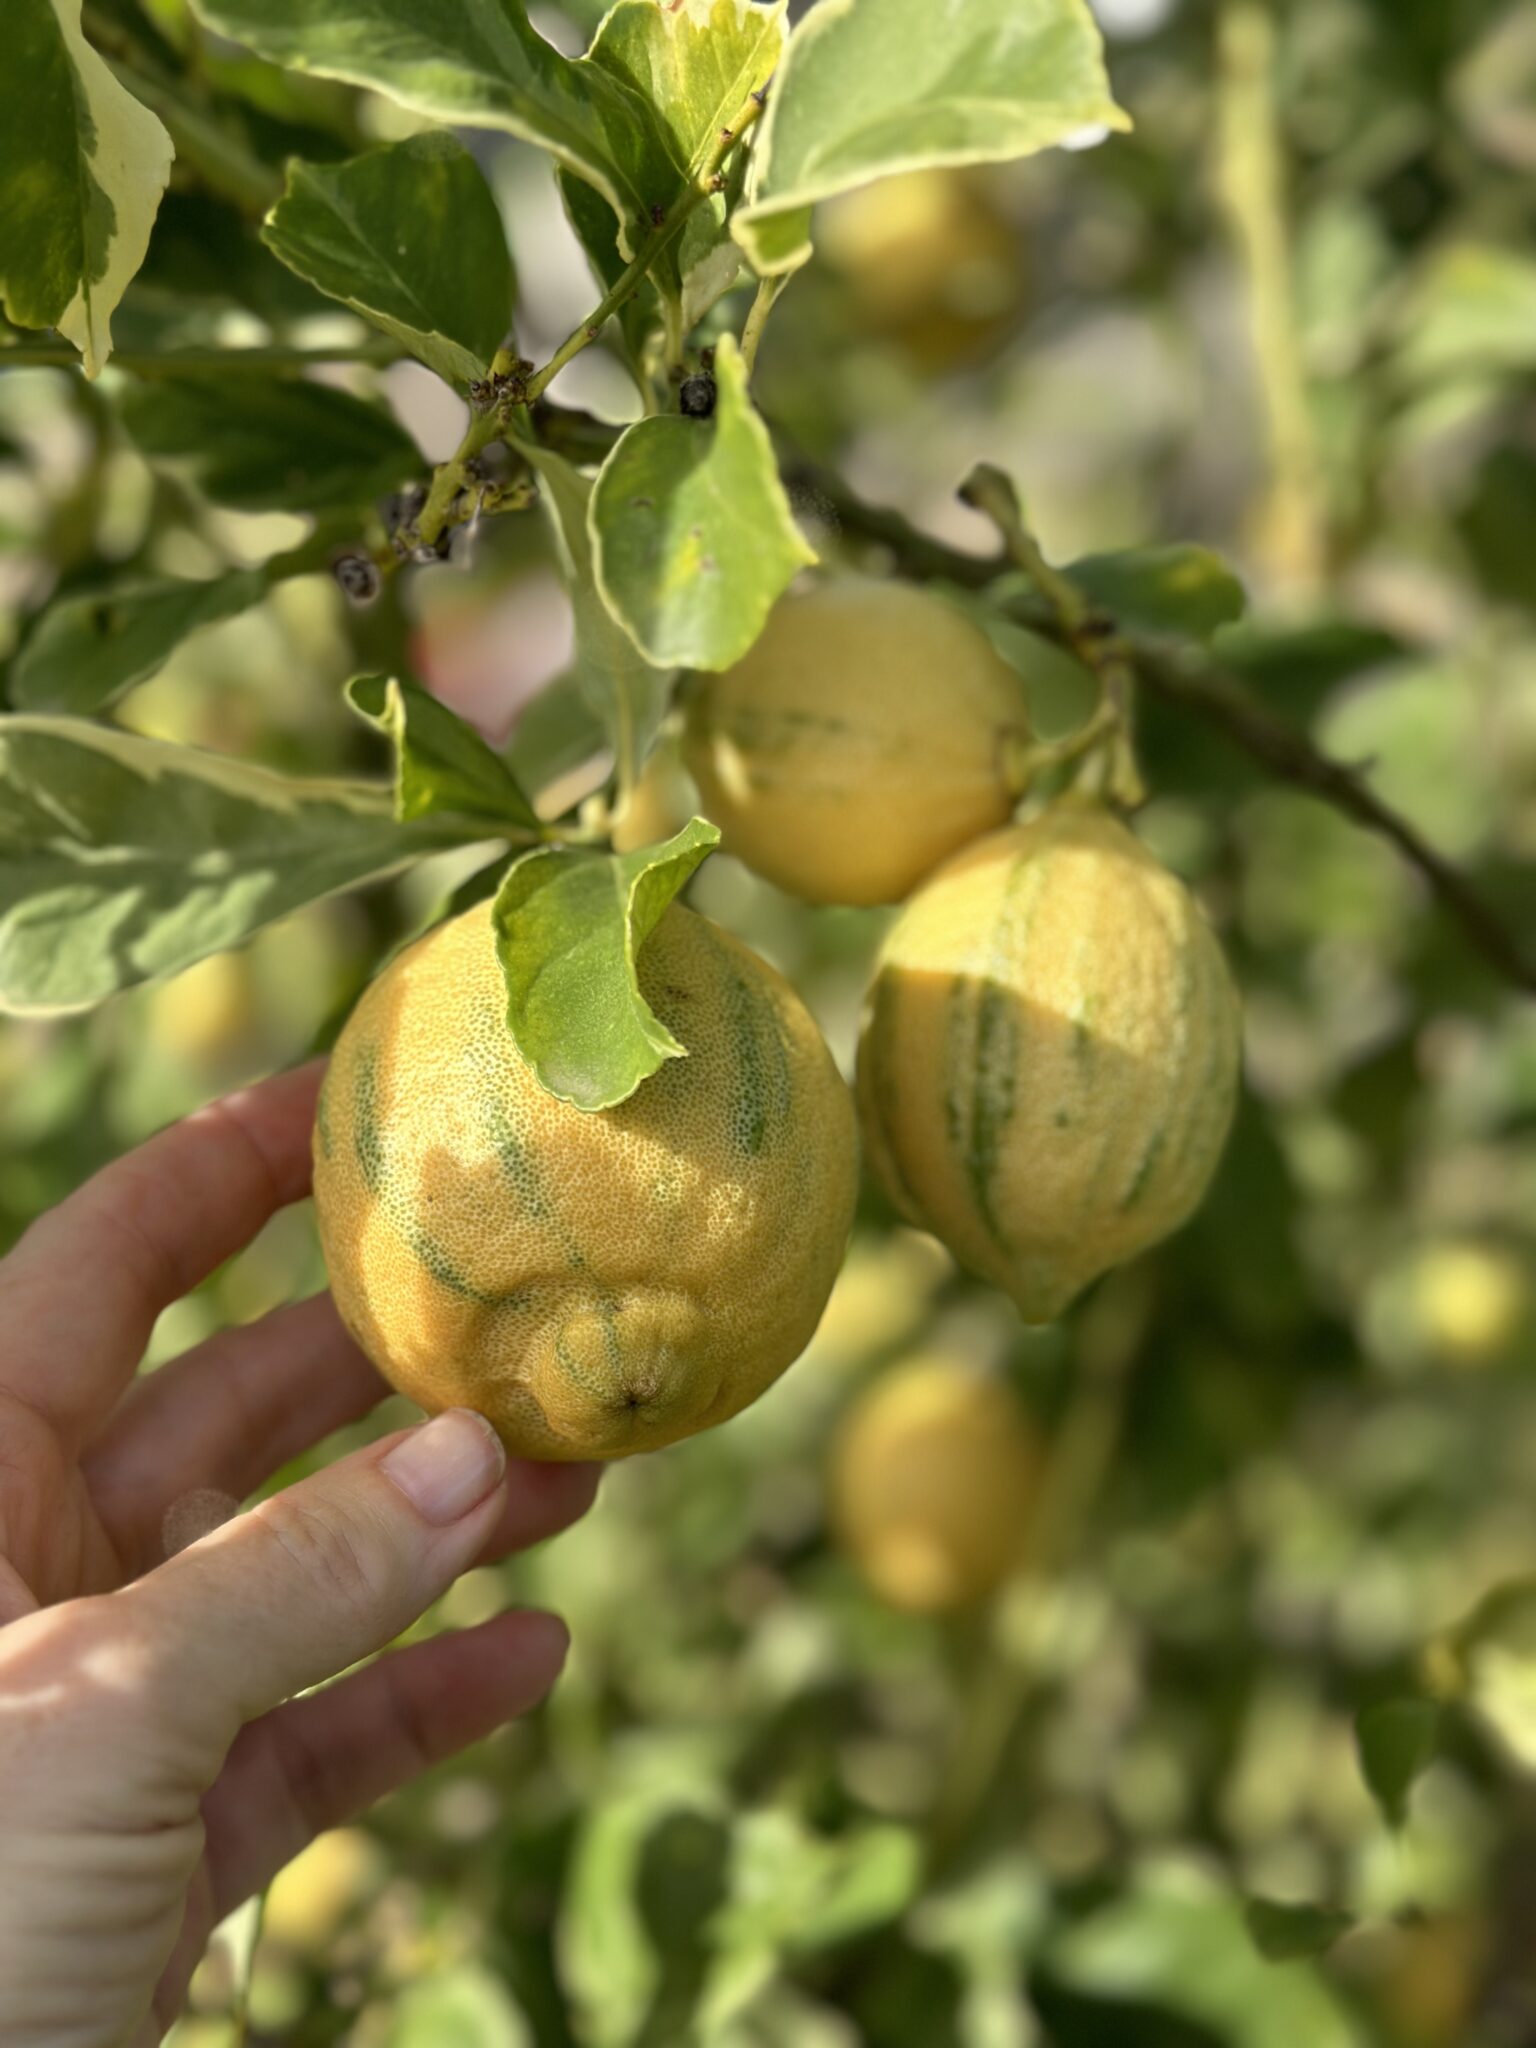 Does Lemon Assist Cut back Salt Consumption Ranges?